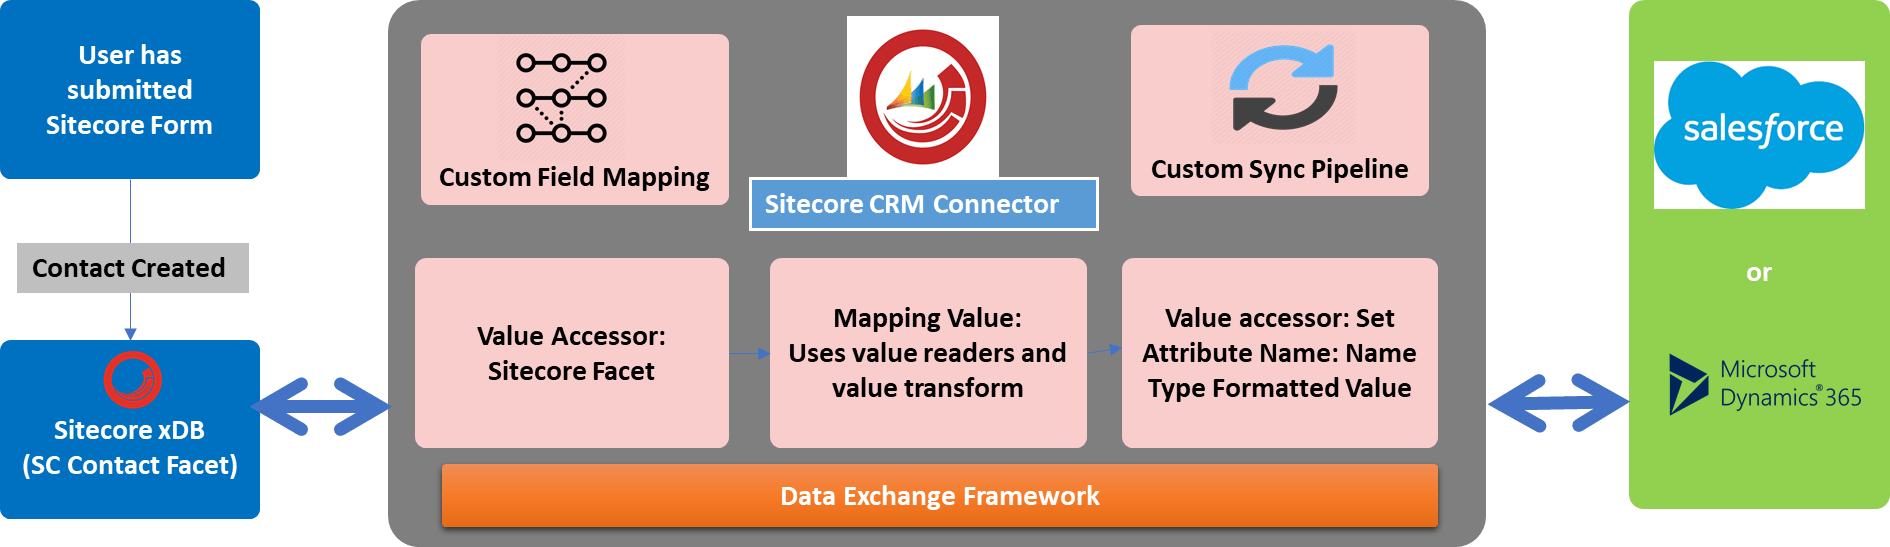 Sitecore CRM Connectors